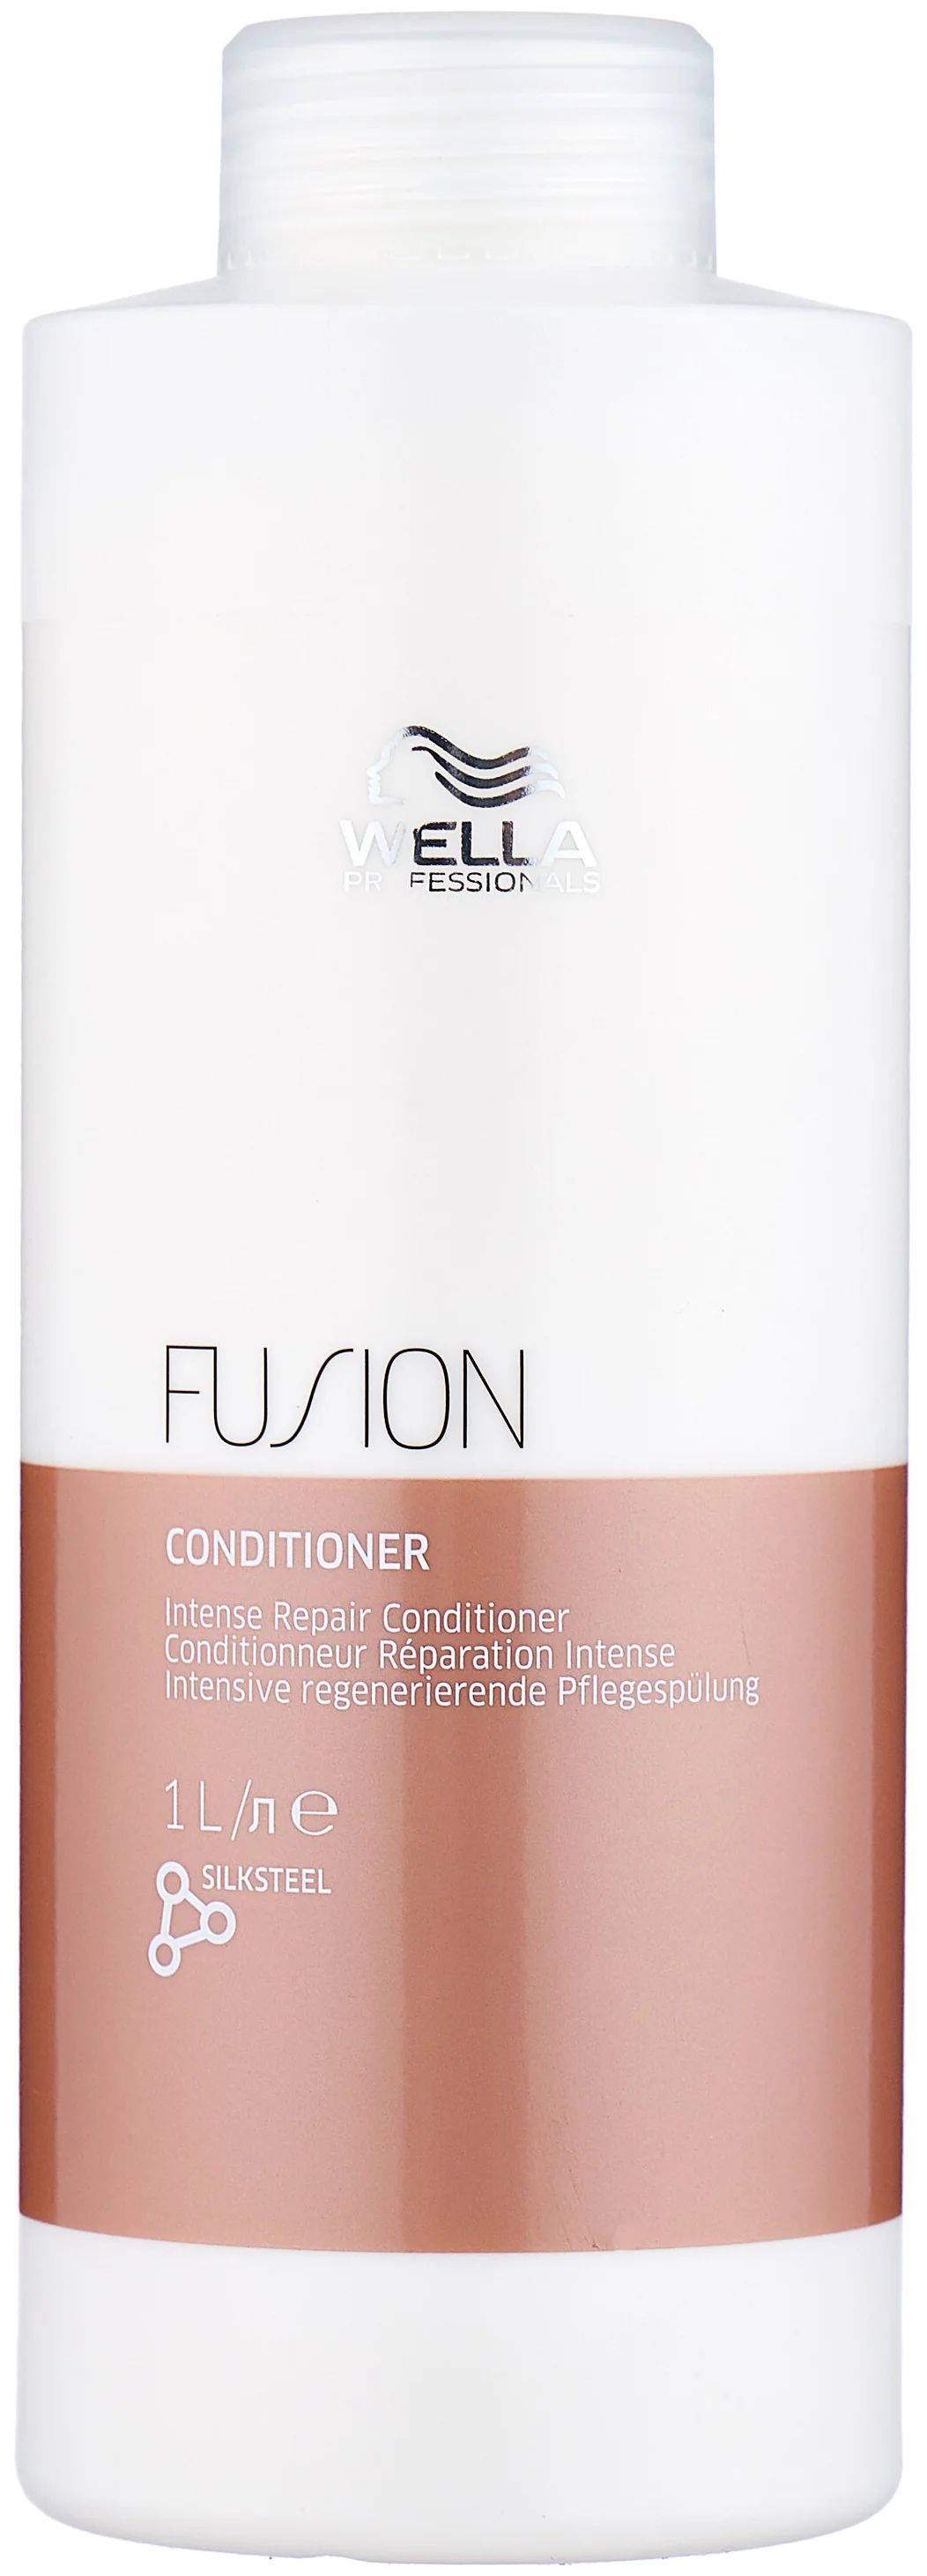 Бальзам для волос Wella Professionals Fusion интенсивно восстанавливающий, 1 л wella professionals шампунь интенсивный восстанавливающий fusion 250 мл